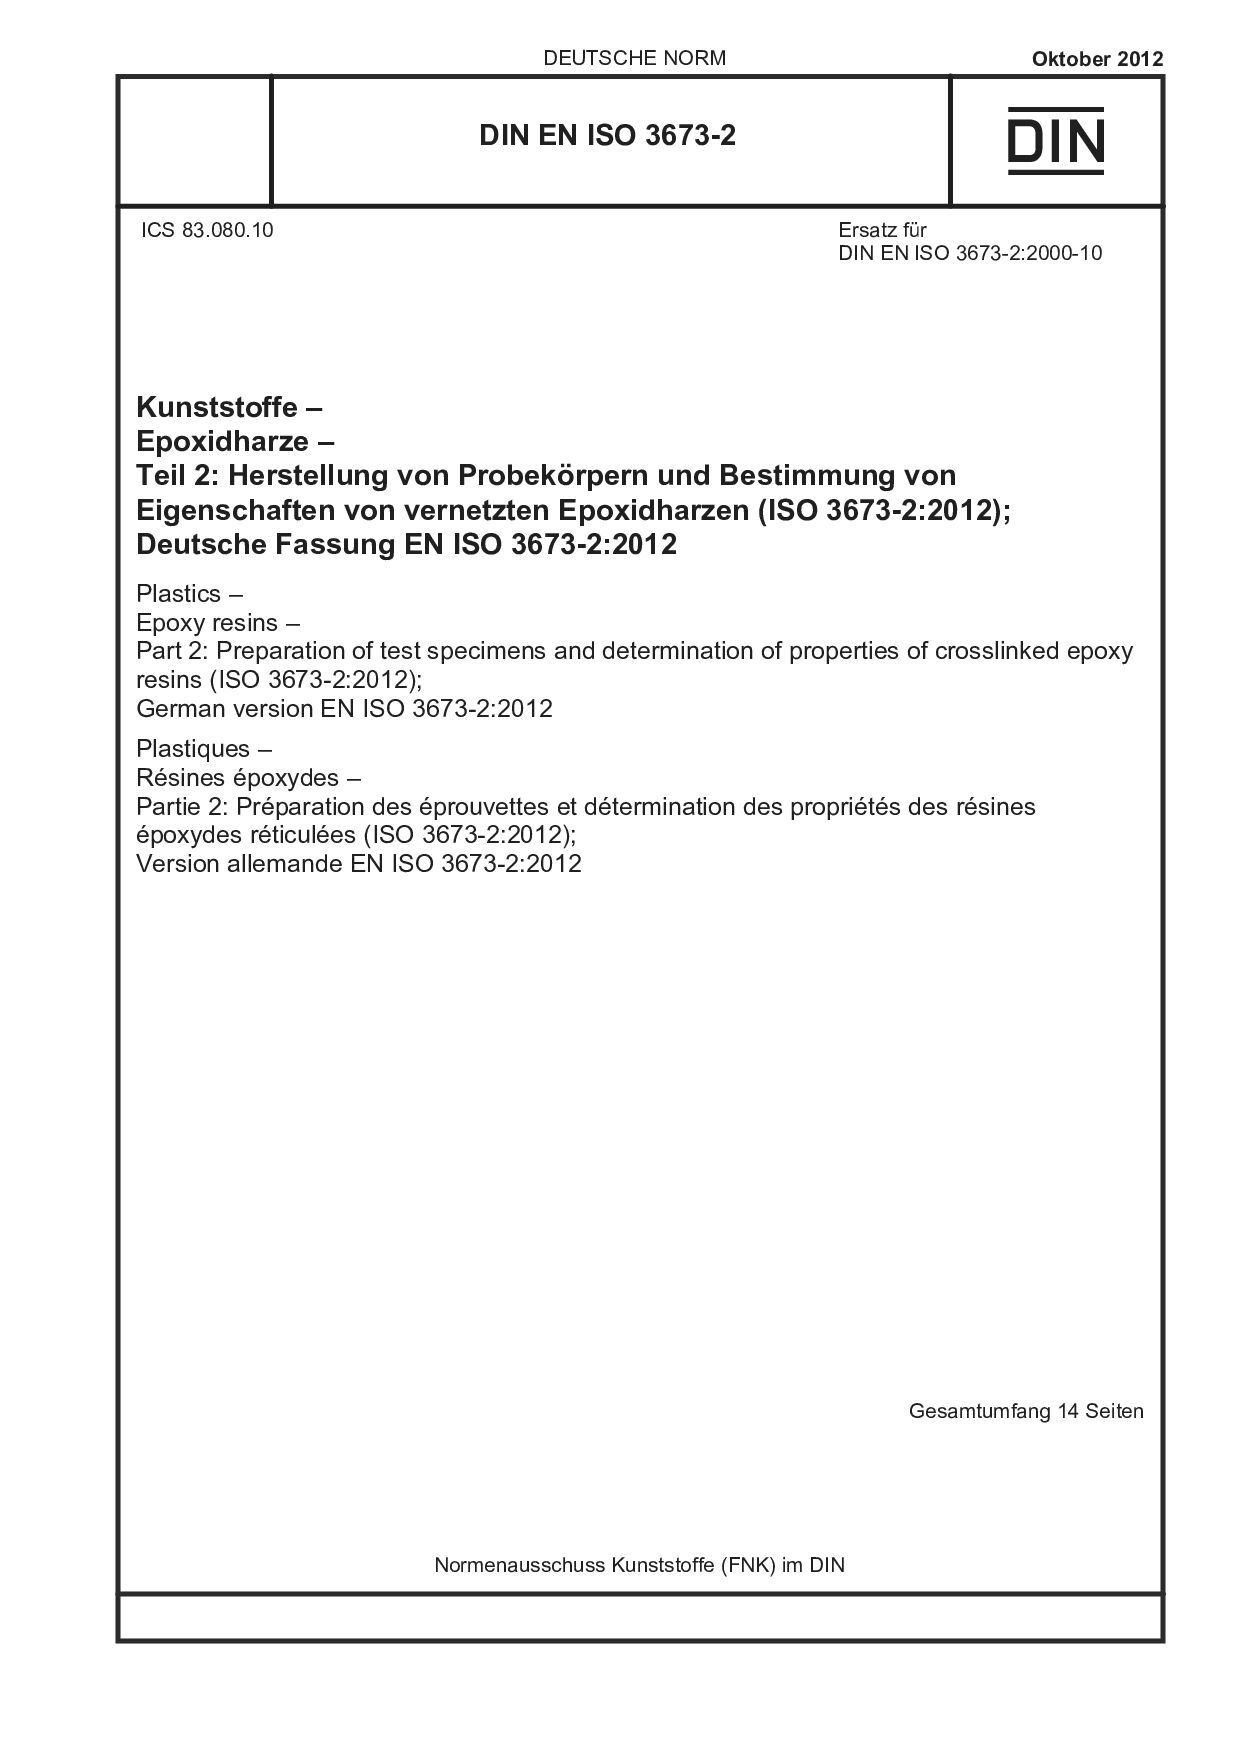 DIN EN ISO 3673-2:2012